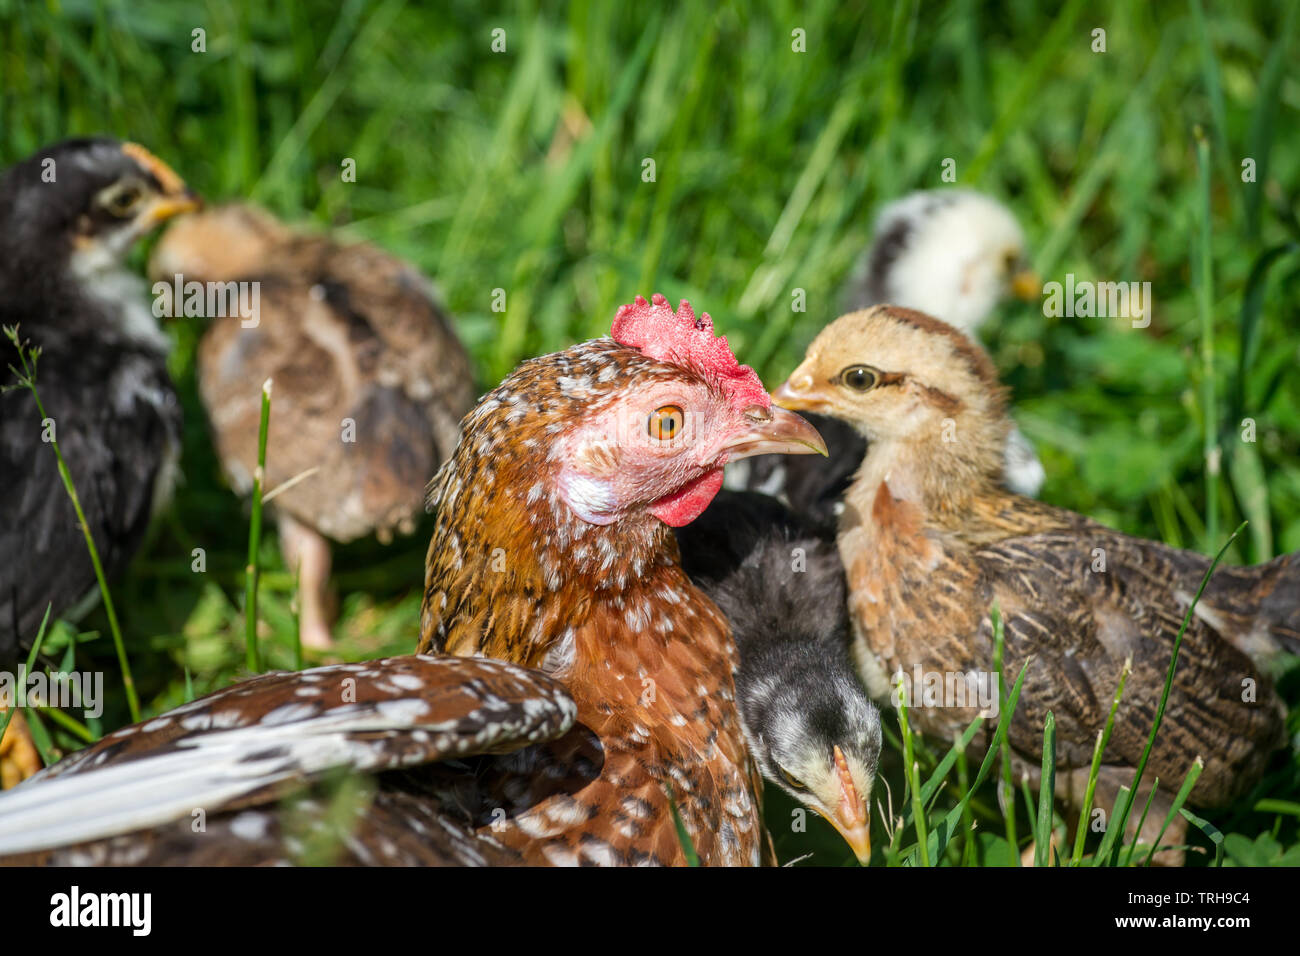 Henne und flügge der Rasse Stoapiperl/Steinhendl, einer vom Aussterben bedrohten Rasse Huhn aus Österreich und genießen Sie einen sonnigen Tag auf der Wiese Stockfoto